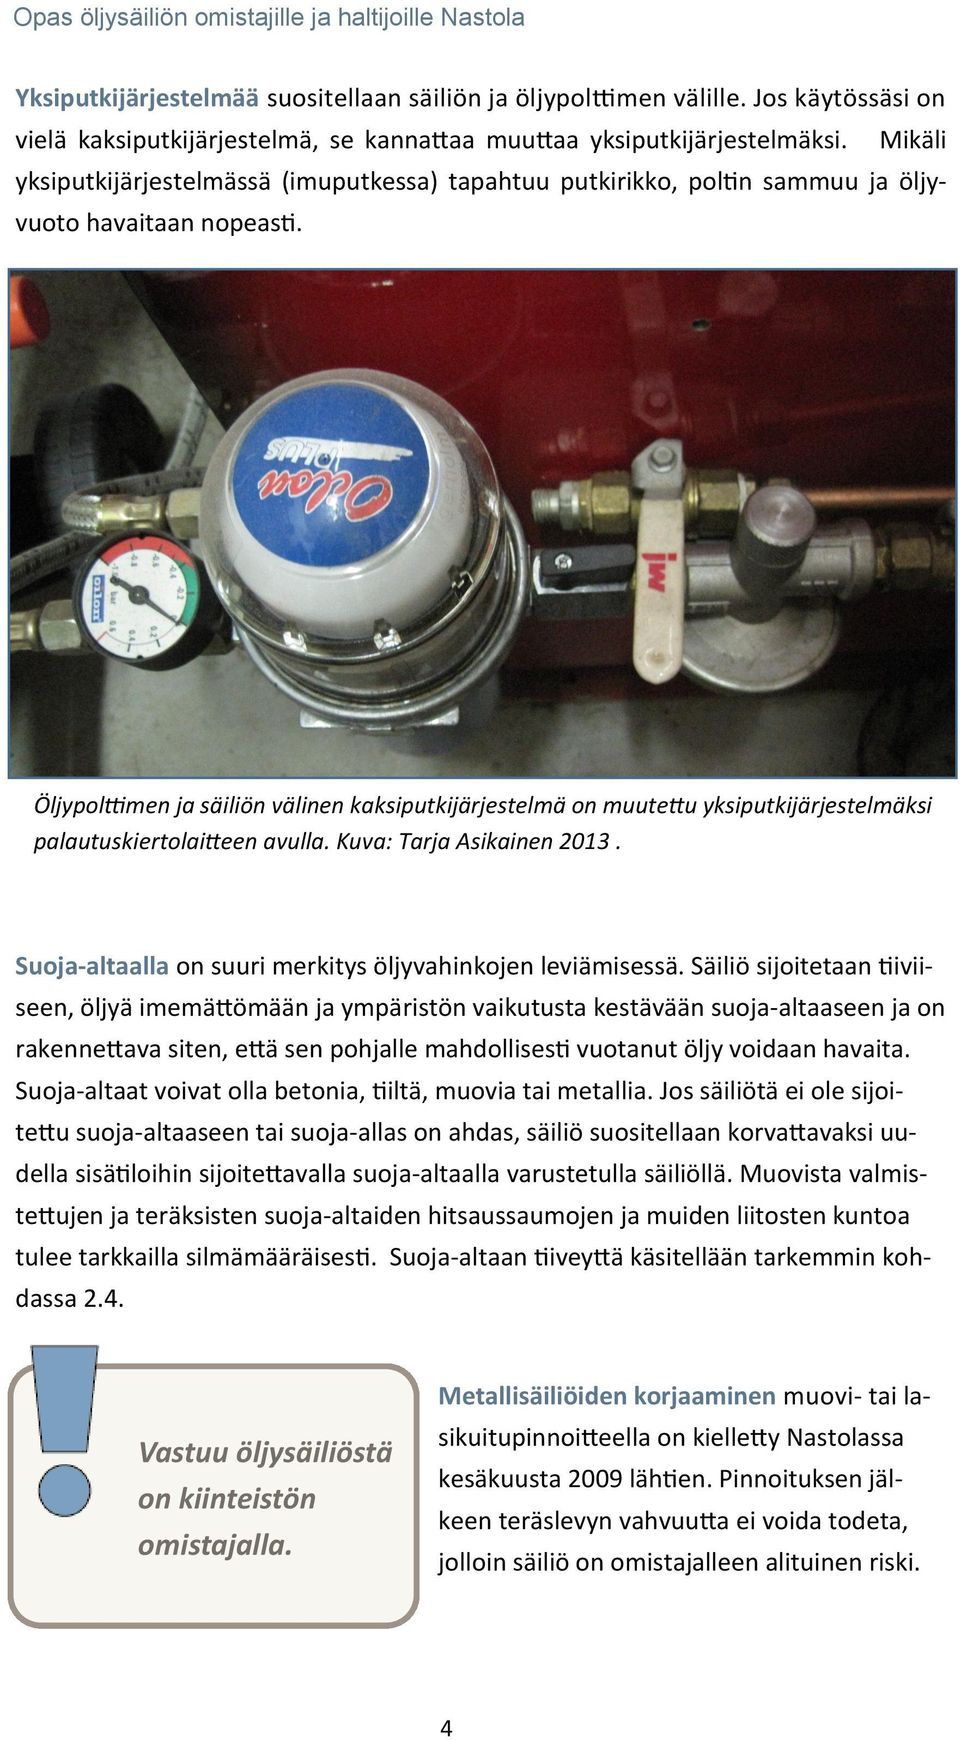 Öljypolttimen ja säiliön välinen kaksiputkijärjestelmä on muutettu yksiputkijärjestelmäksi palautuskiertolaitteen avulla. Kuva: Tarja Asikainen 2013.